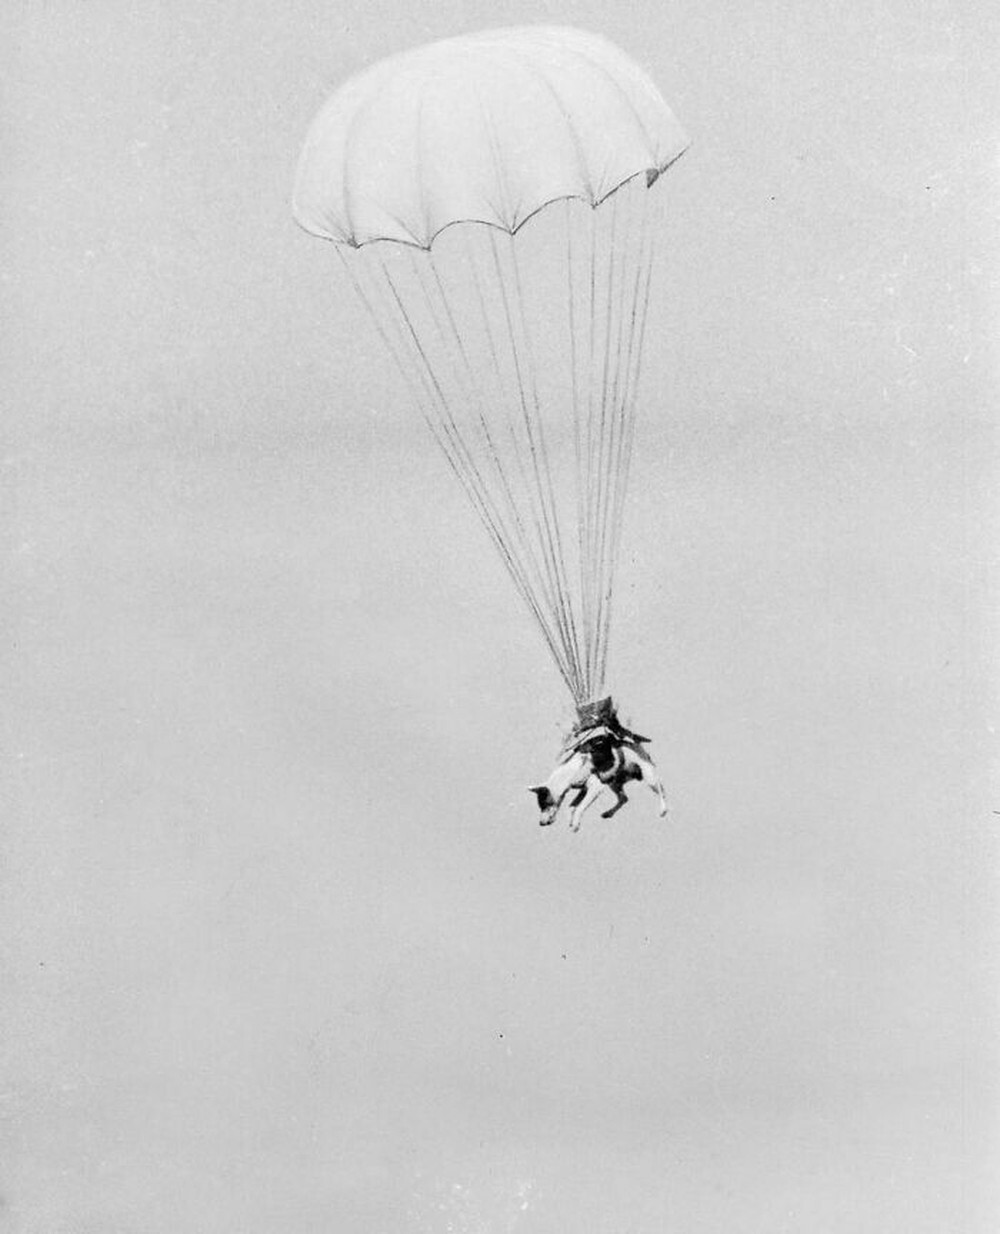 19. «Парапёс» Салво тренируется прыгать с парашютом. Собаки сопровождали войска во время высадки в Нормандии, вынюхивая мины, ловушки и войска противника